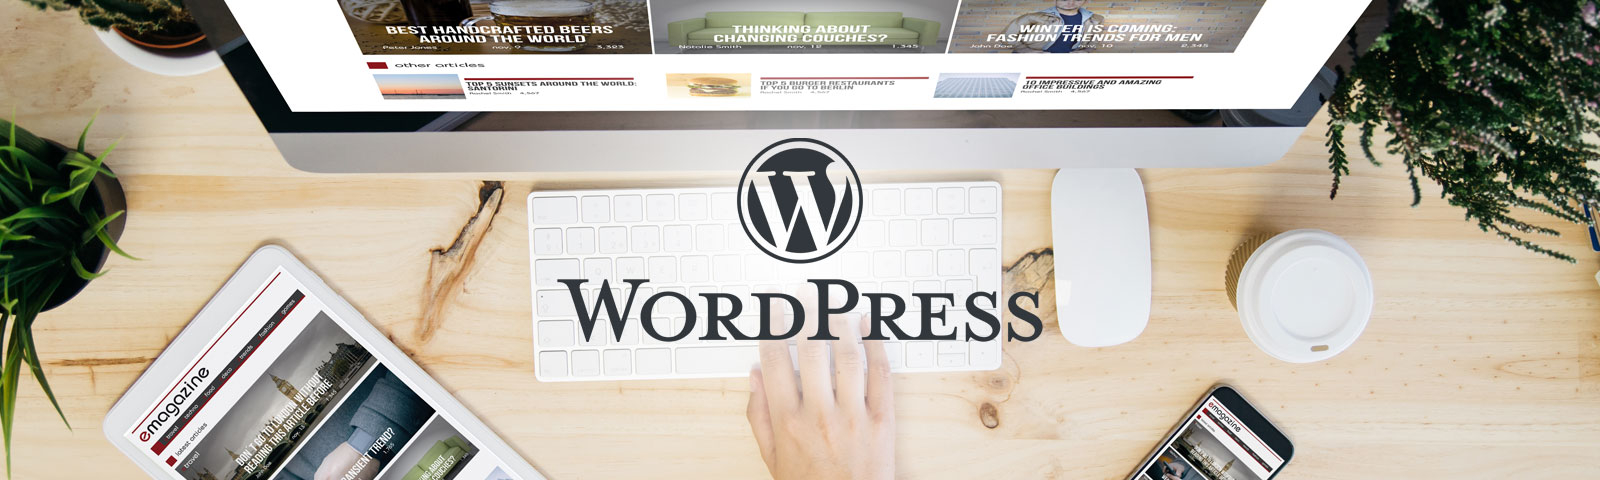 Modificar un Wordpress: Cuidados a tener en cuenta 